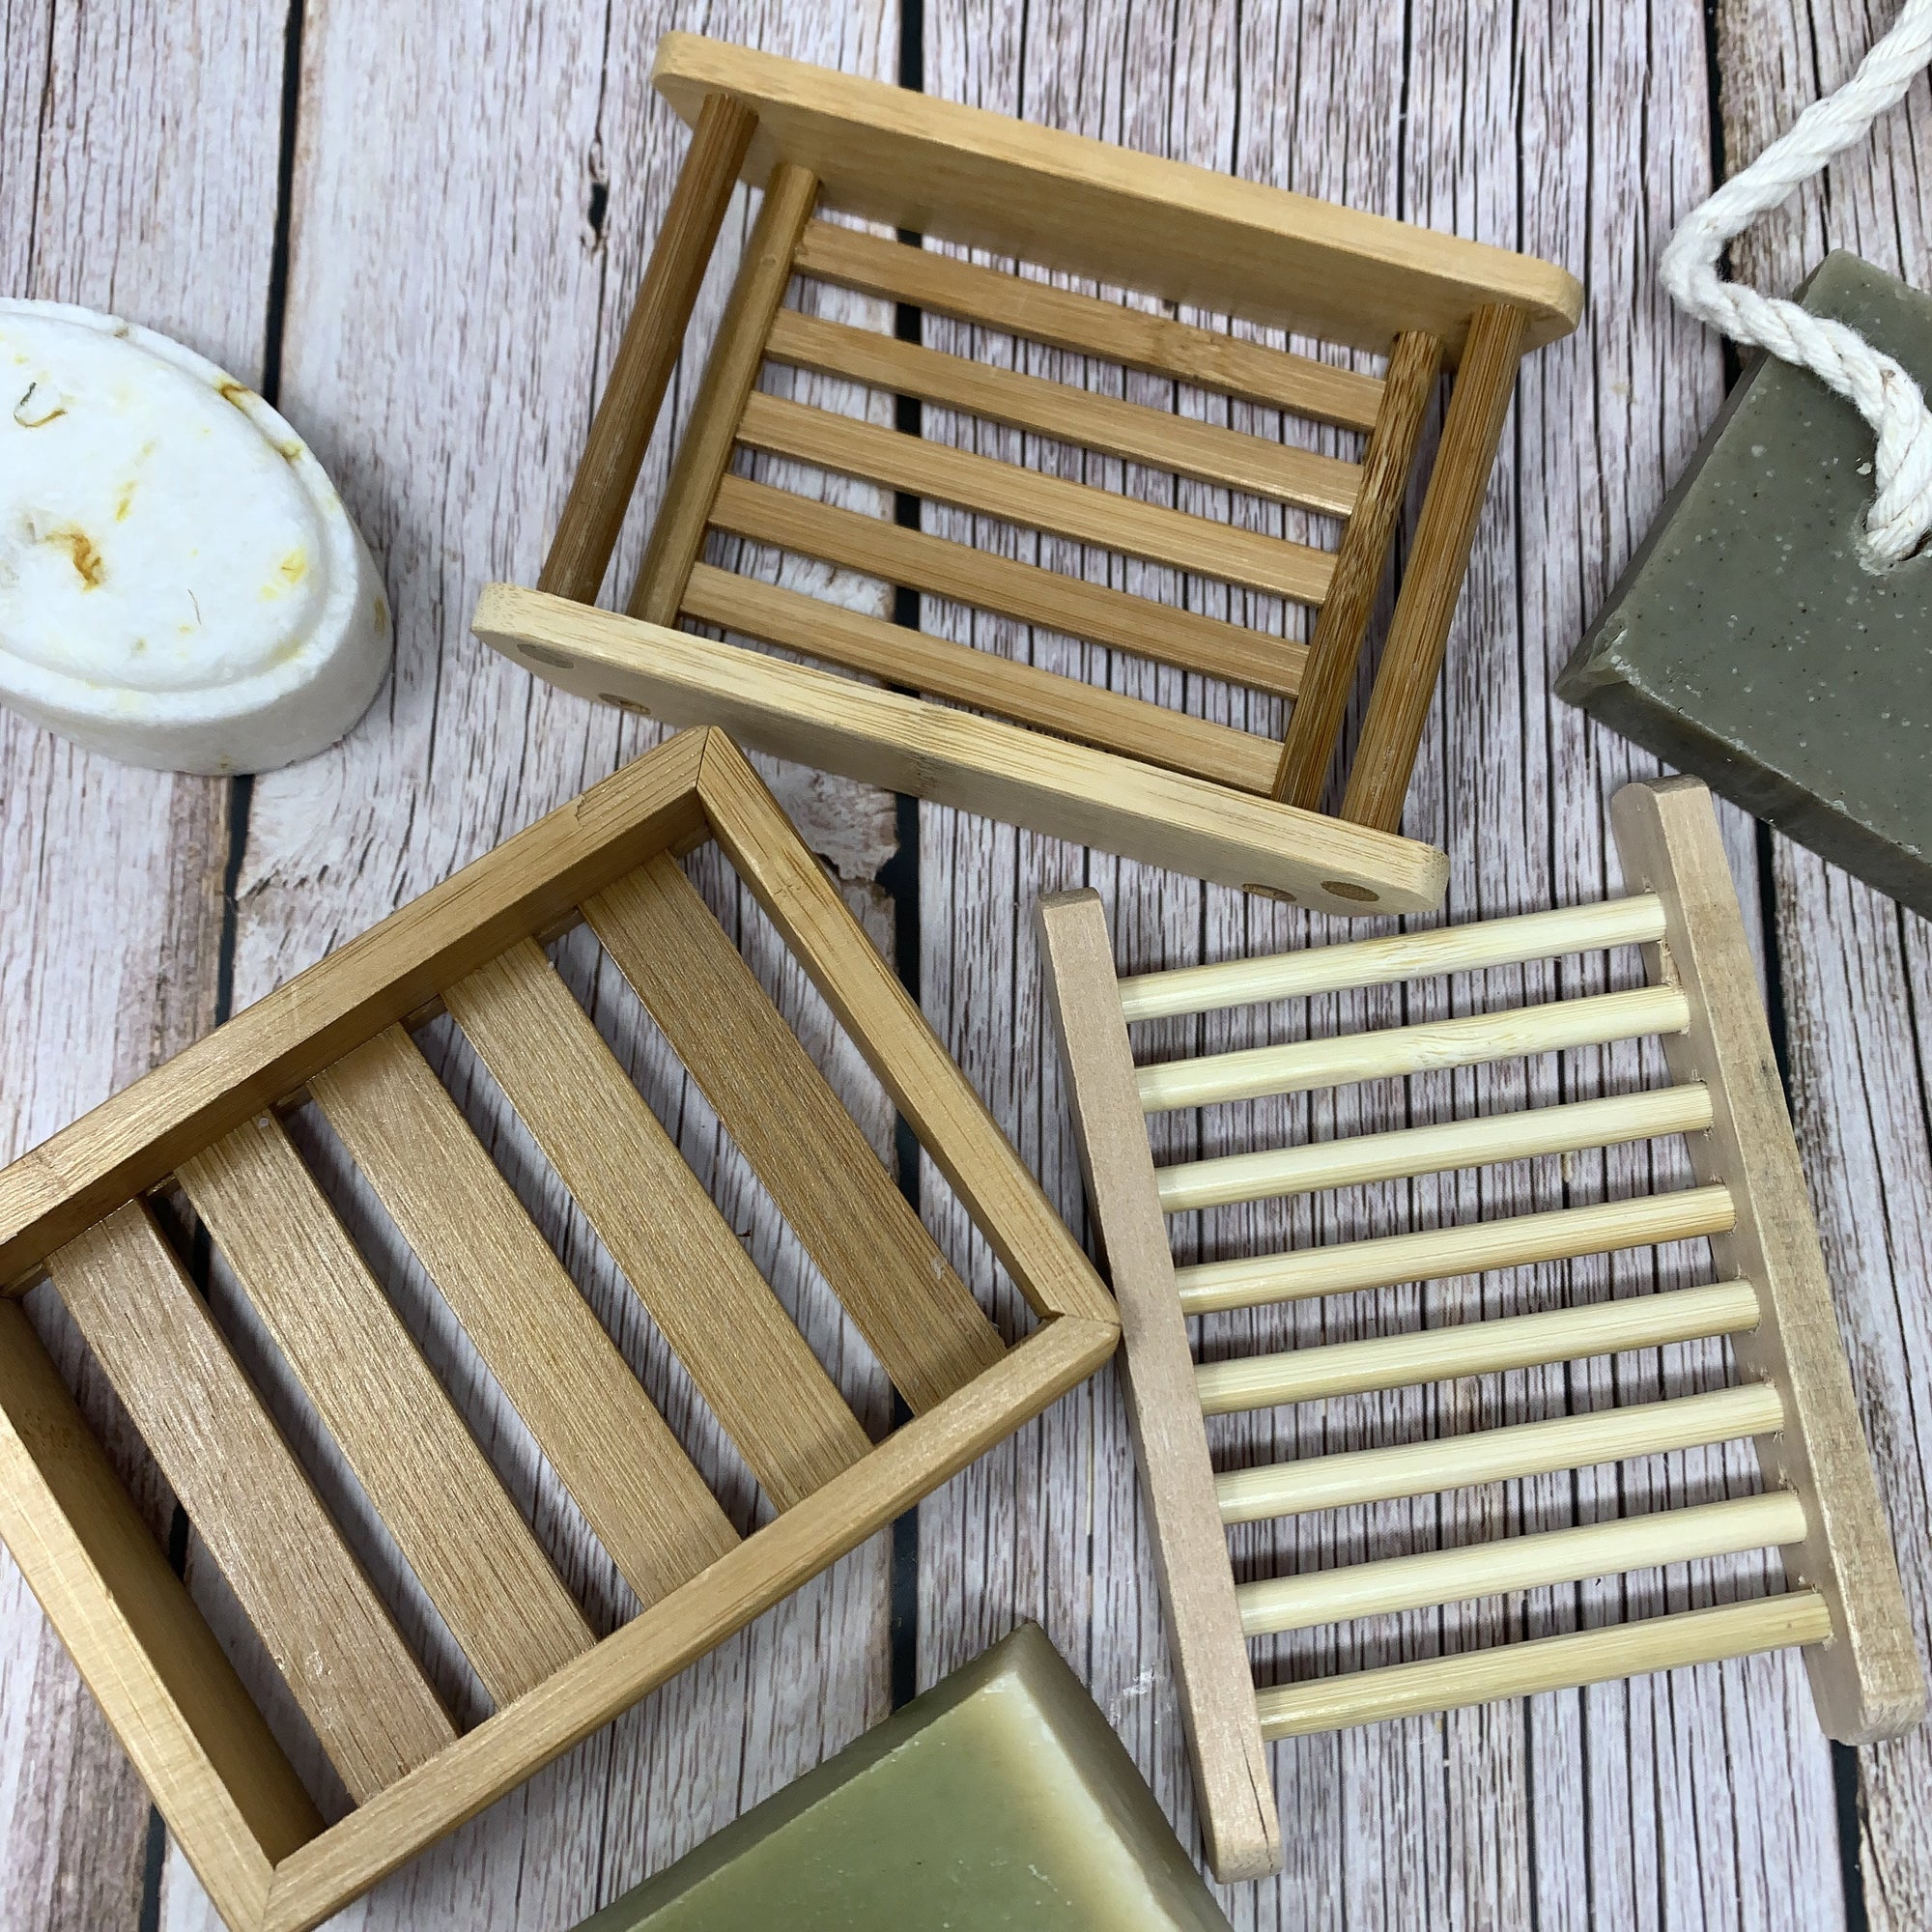 Bamboo Soap Dish Draining Organic Eco Friendly Natural Solid Tray